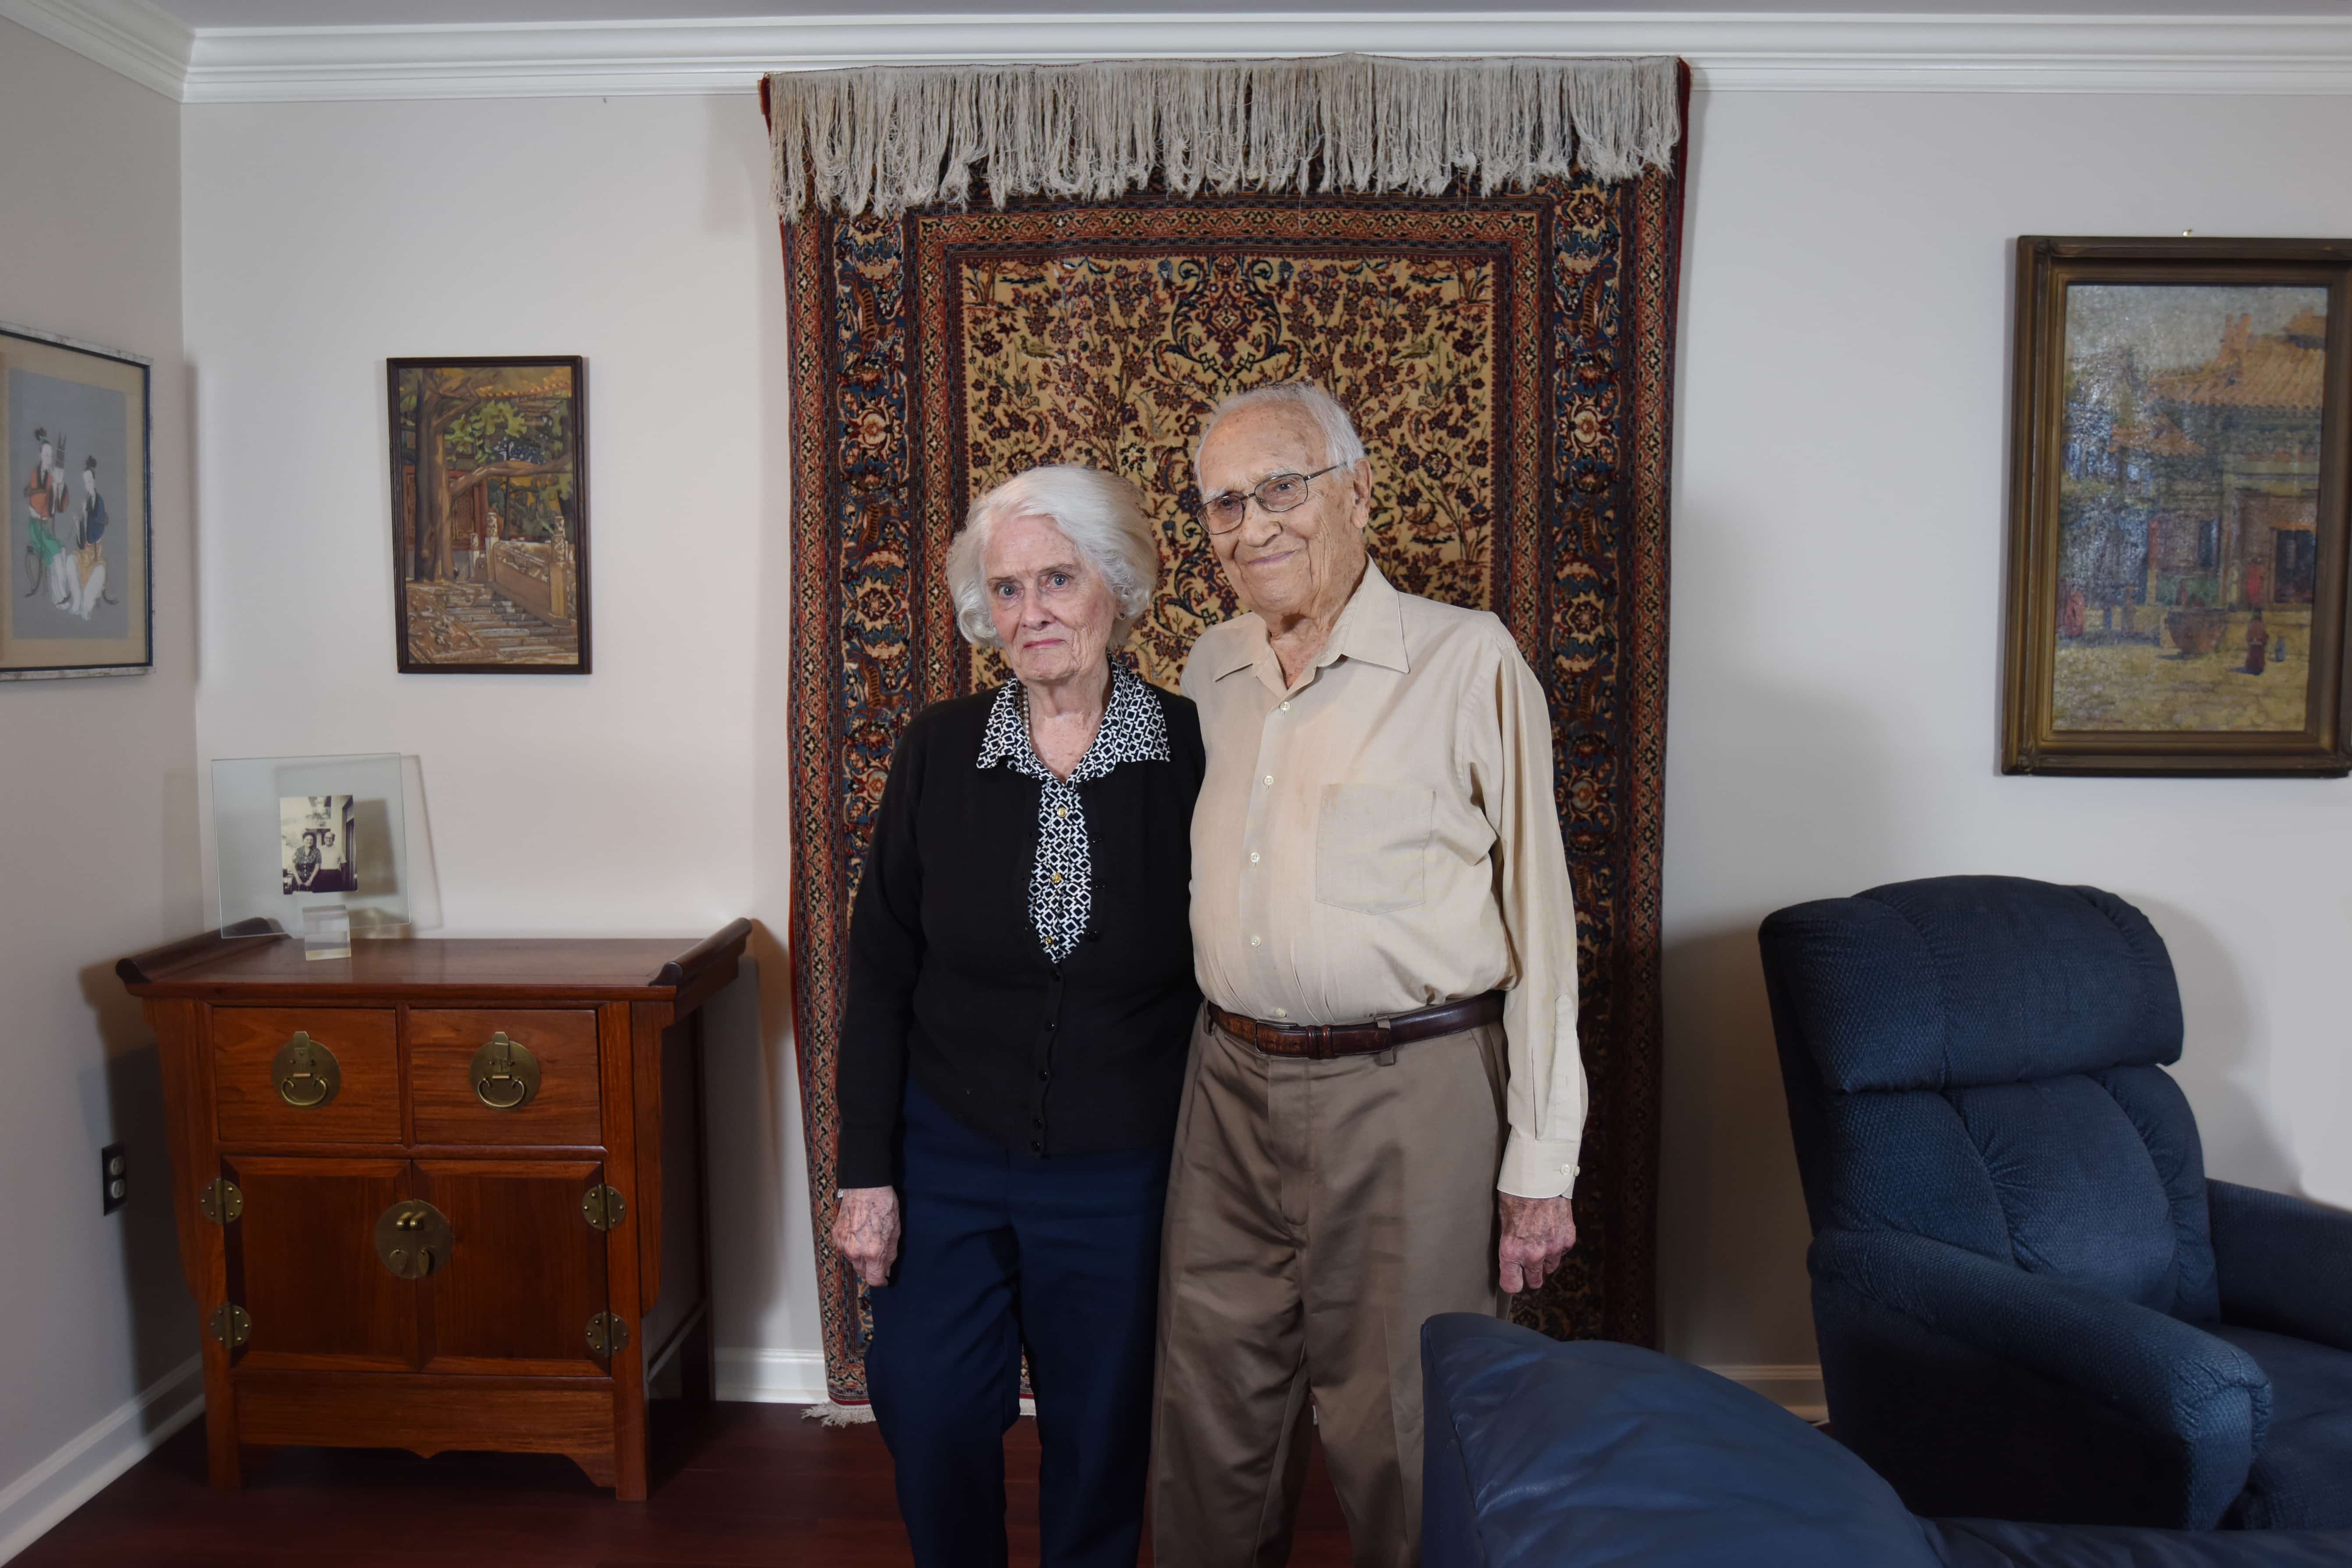 Don and Brenda K. at Home at Kensington Park Senior Living